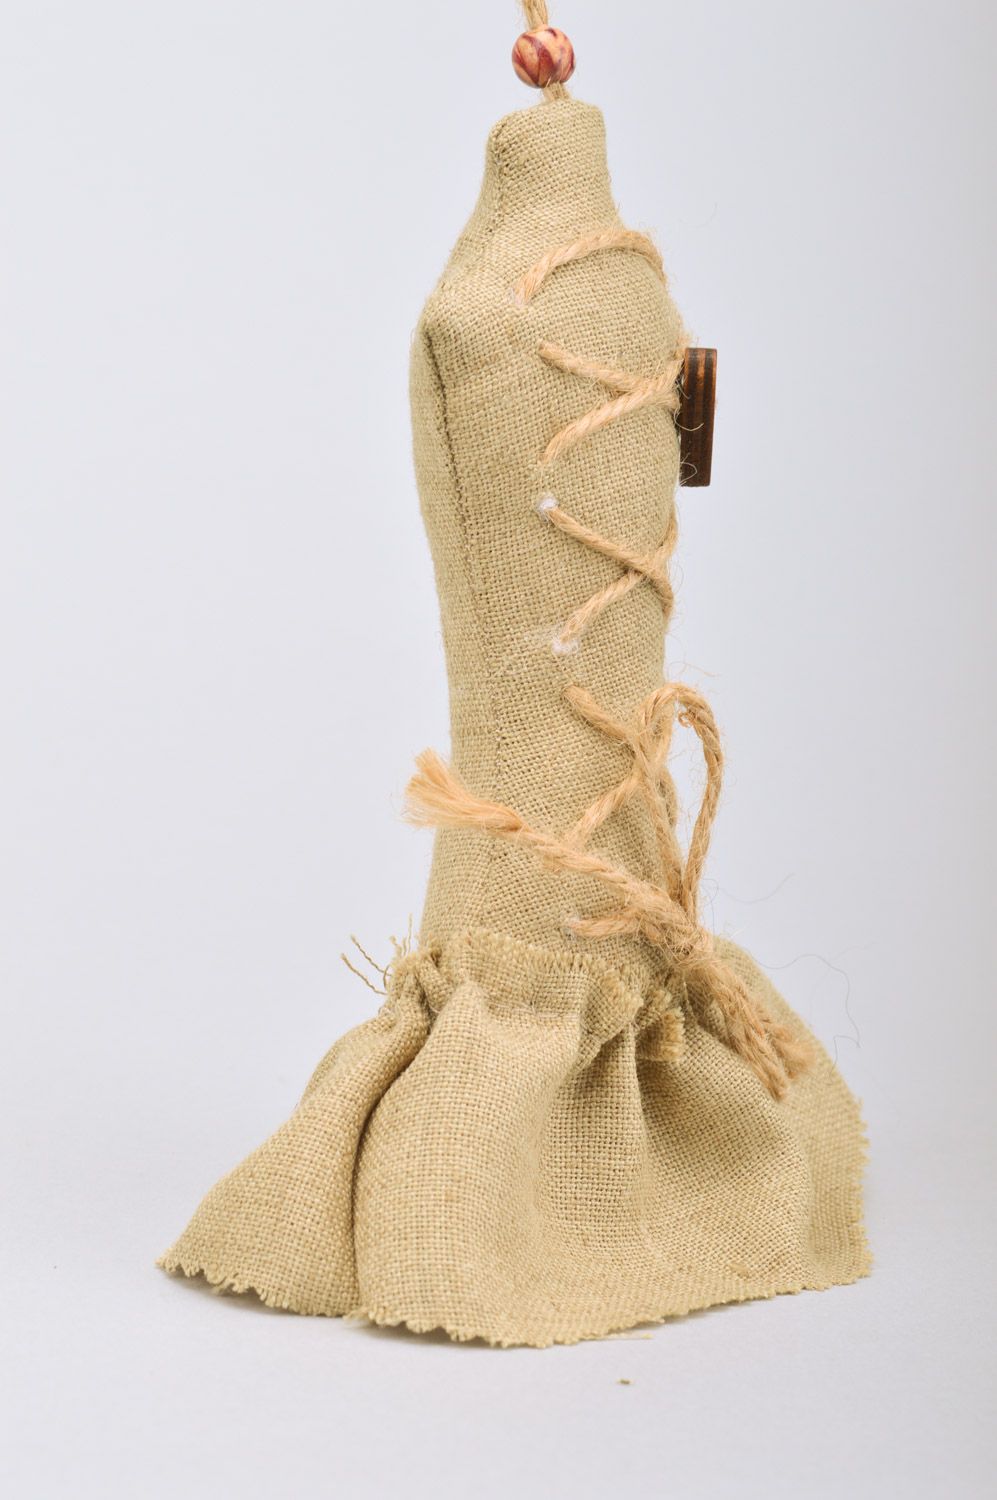 Petite suspension décorative parfumée en tissu en forme de robe faite main photo 5